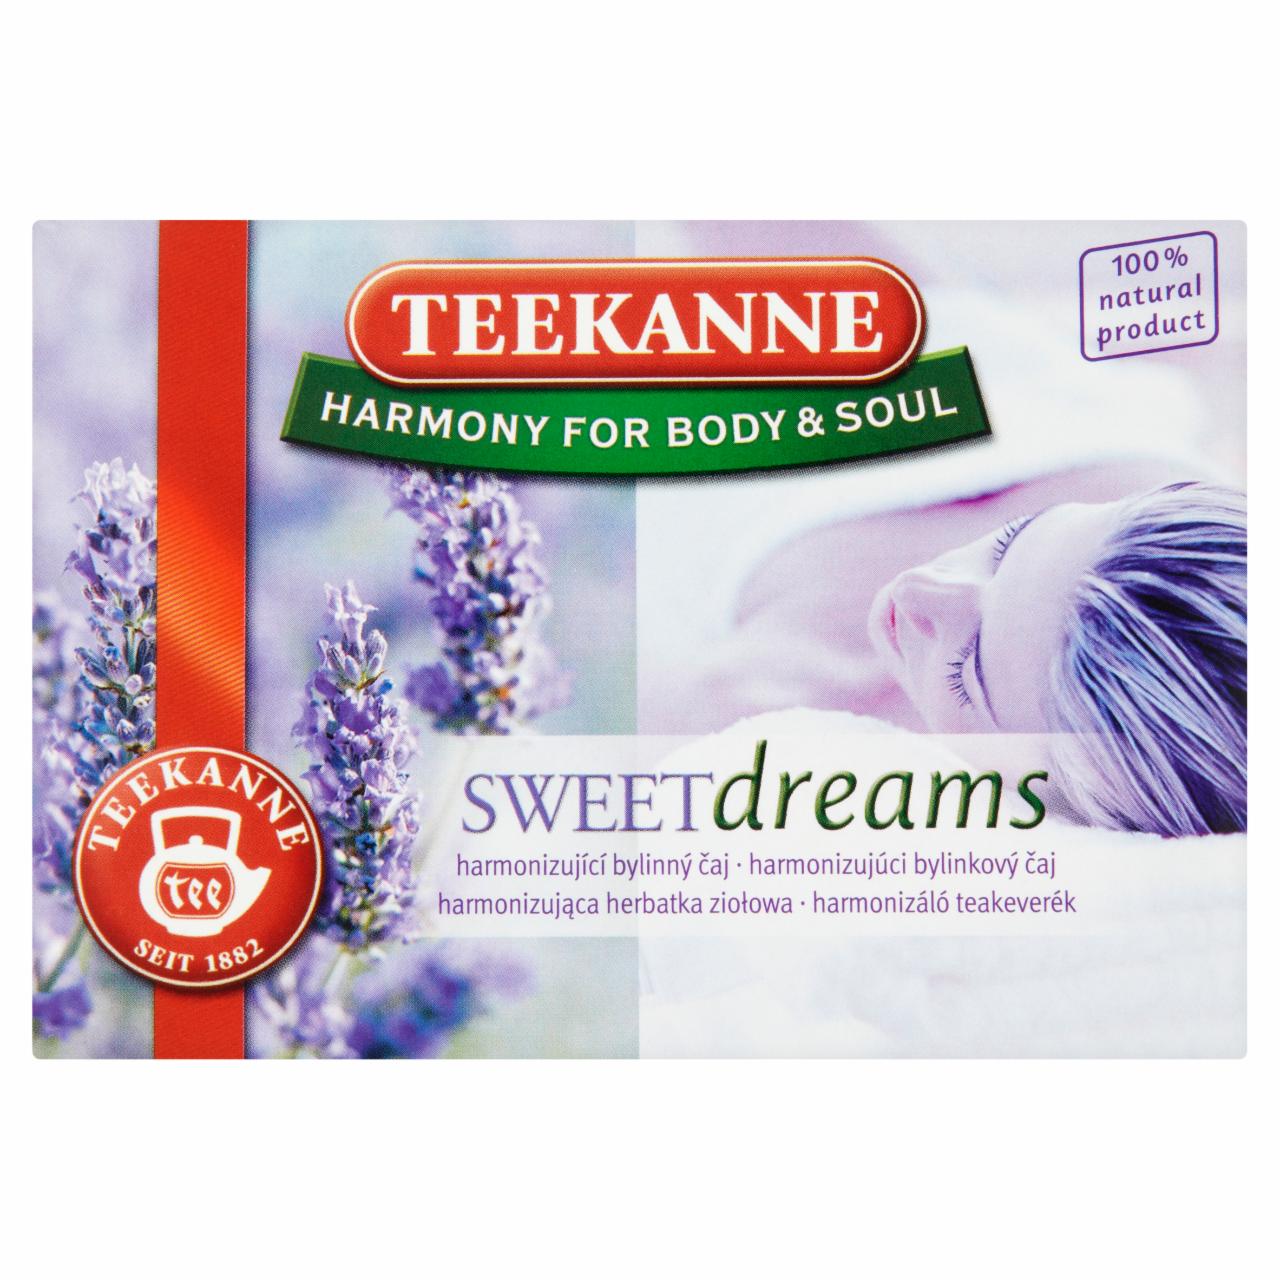 Képek - Teekanne Harmony for Body & Soul Sweet Dreams harmonizáló teakeverék 16 teatasak 27,2 g